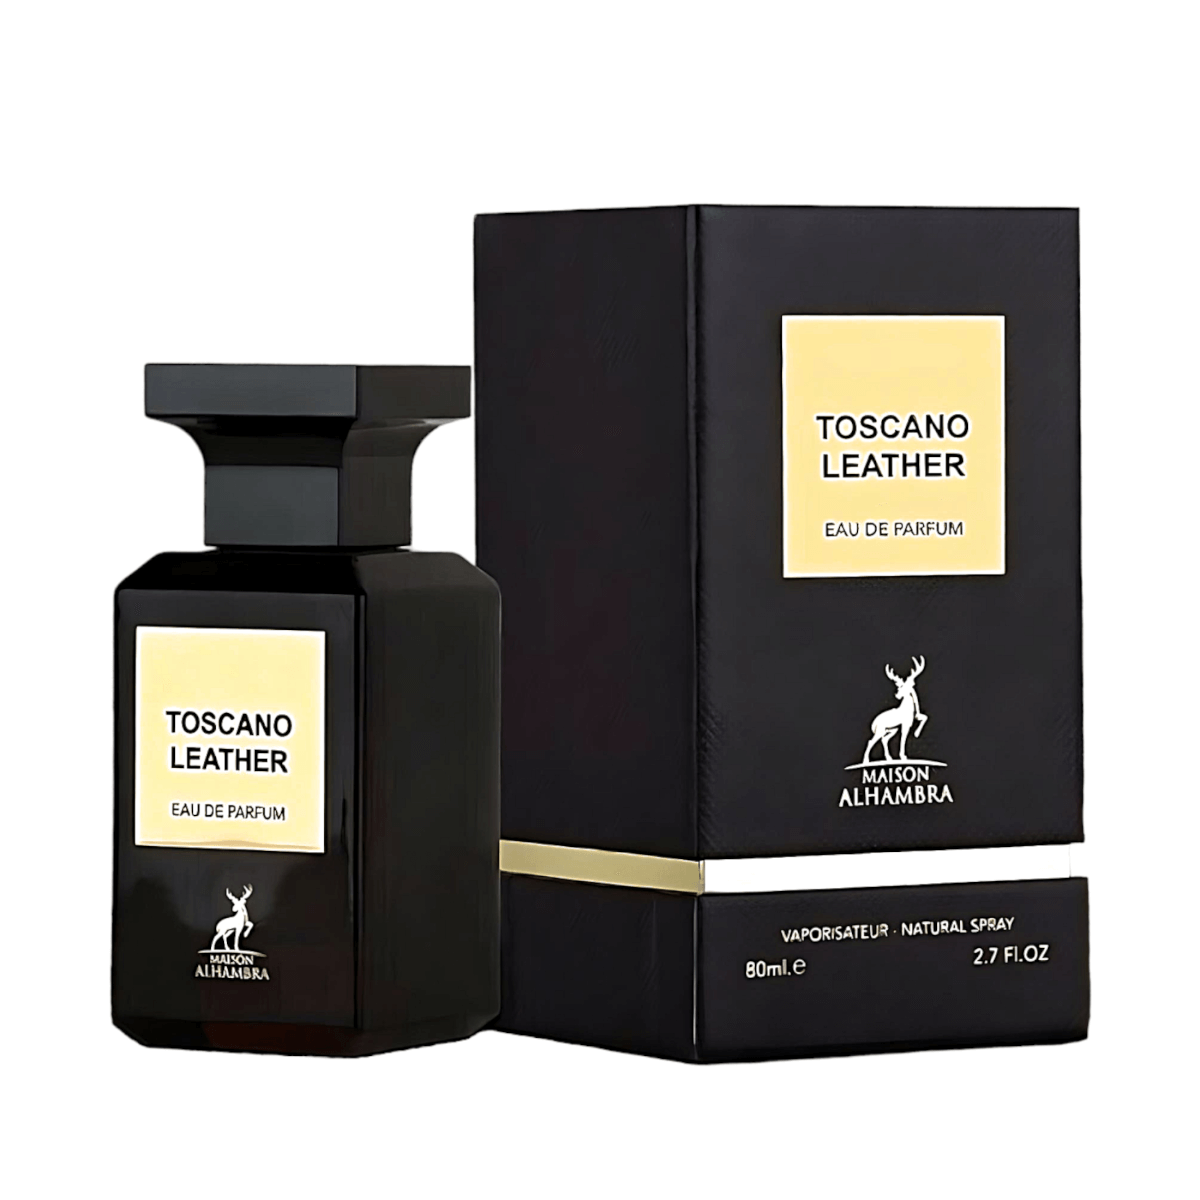 TOSCANO LEATHER - Eau de Parfum Unisex